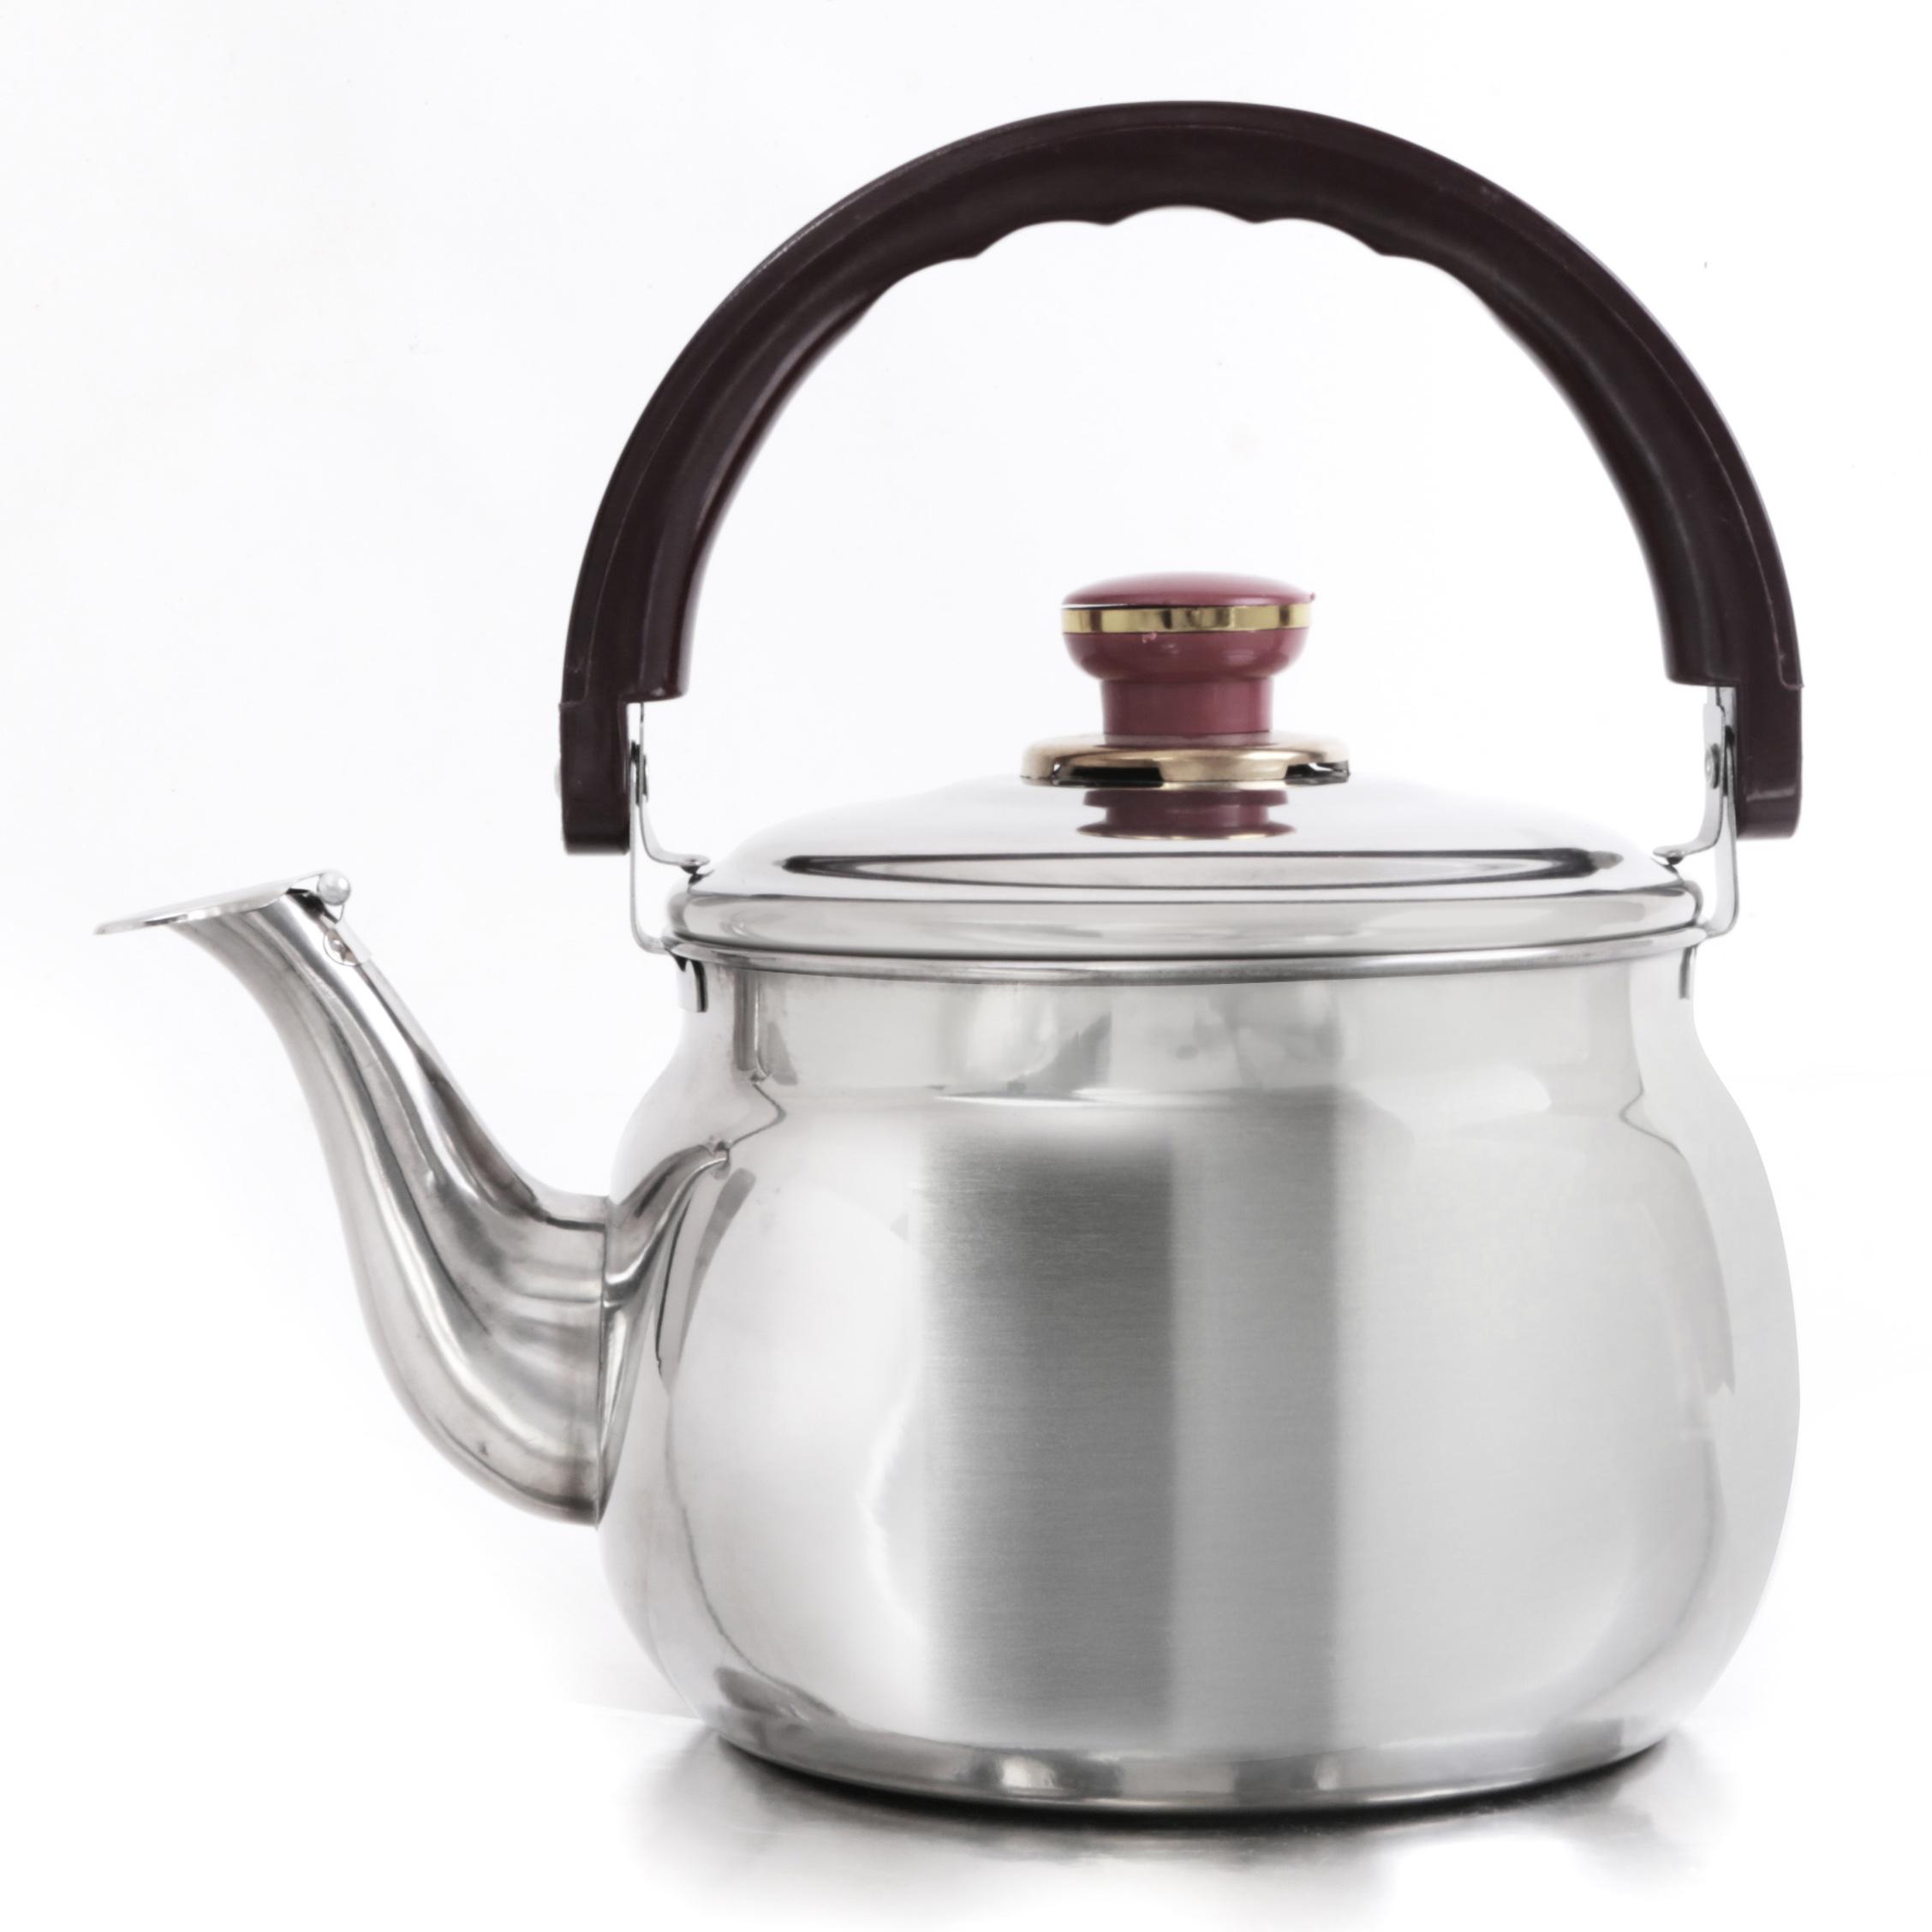 ابريق شاي ستانلس ستيل 3.5 لتر Royalford 3.5L Stainless Steel Kettle Portable Whistling Tea Kettle